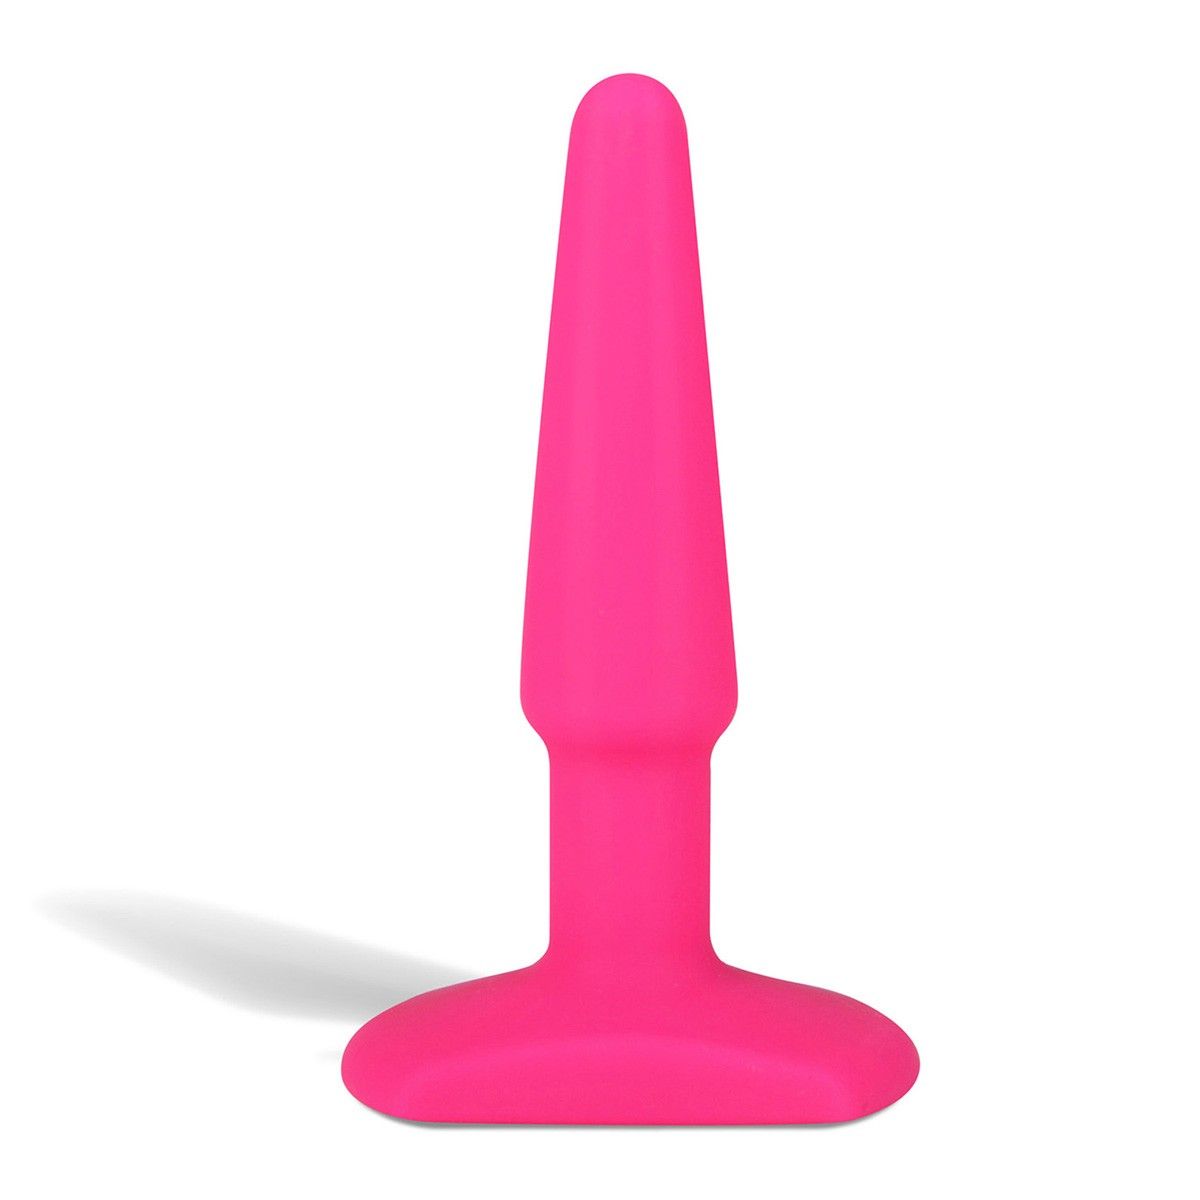 Розовый тонкий анальный плаг из бархатистого и нежного силикона - гипоаллергенного материала. Пробка имеет уникальную приятную текстуру, которая невероятно приятна на ощупь. Удобная форма позволит использовать плаг и во время секса, и для подготовки к нему. Рабочая длина - 9 см.